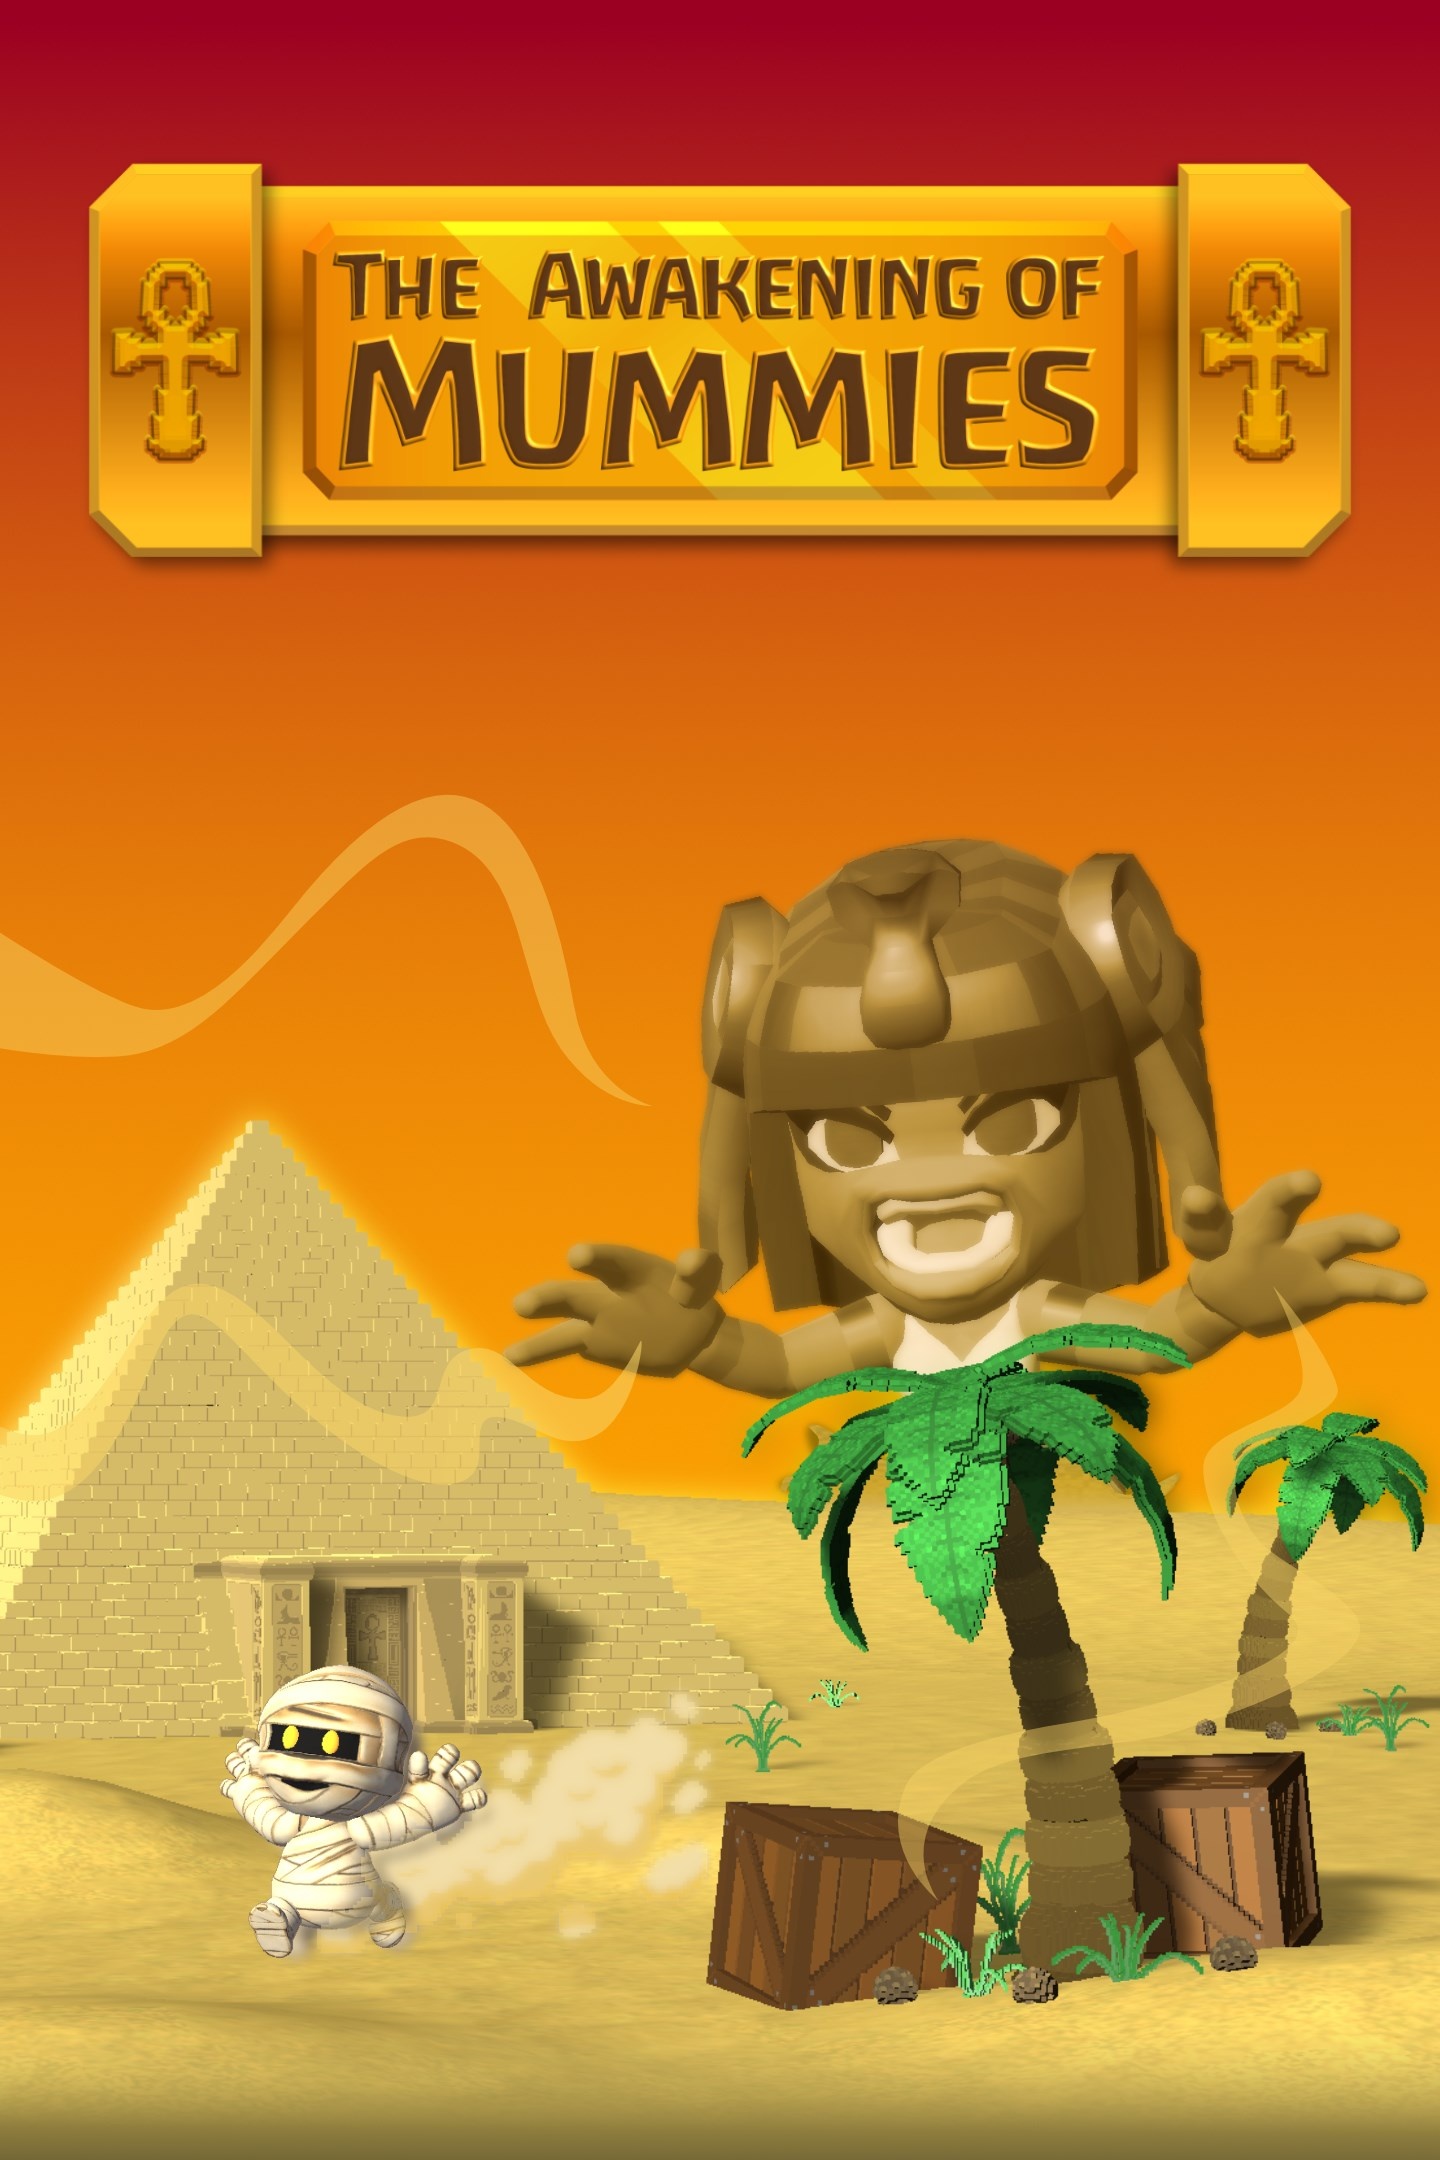 The Awakening of Mummies - November 16